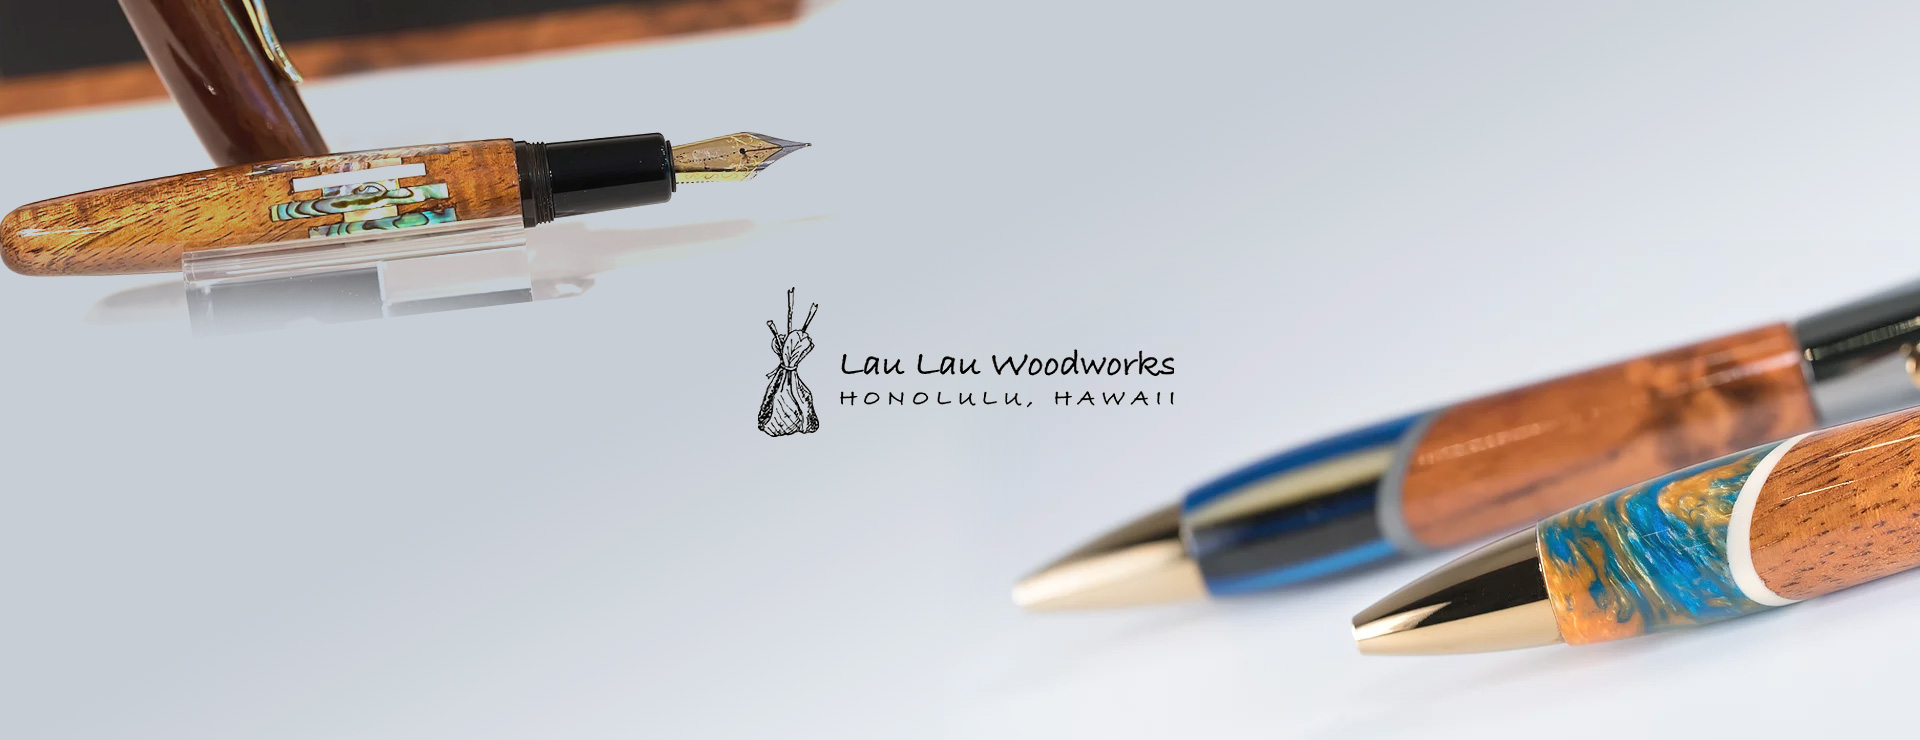 Lau Lau Woodworks（ラウラウ・ウッドワークス）